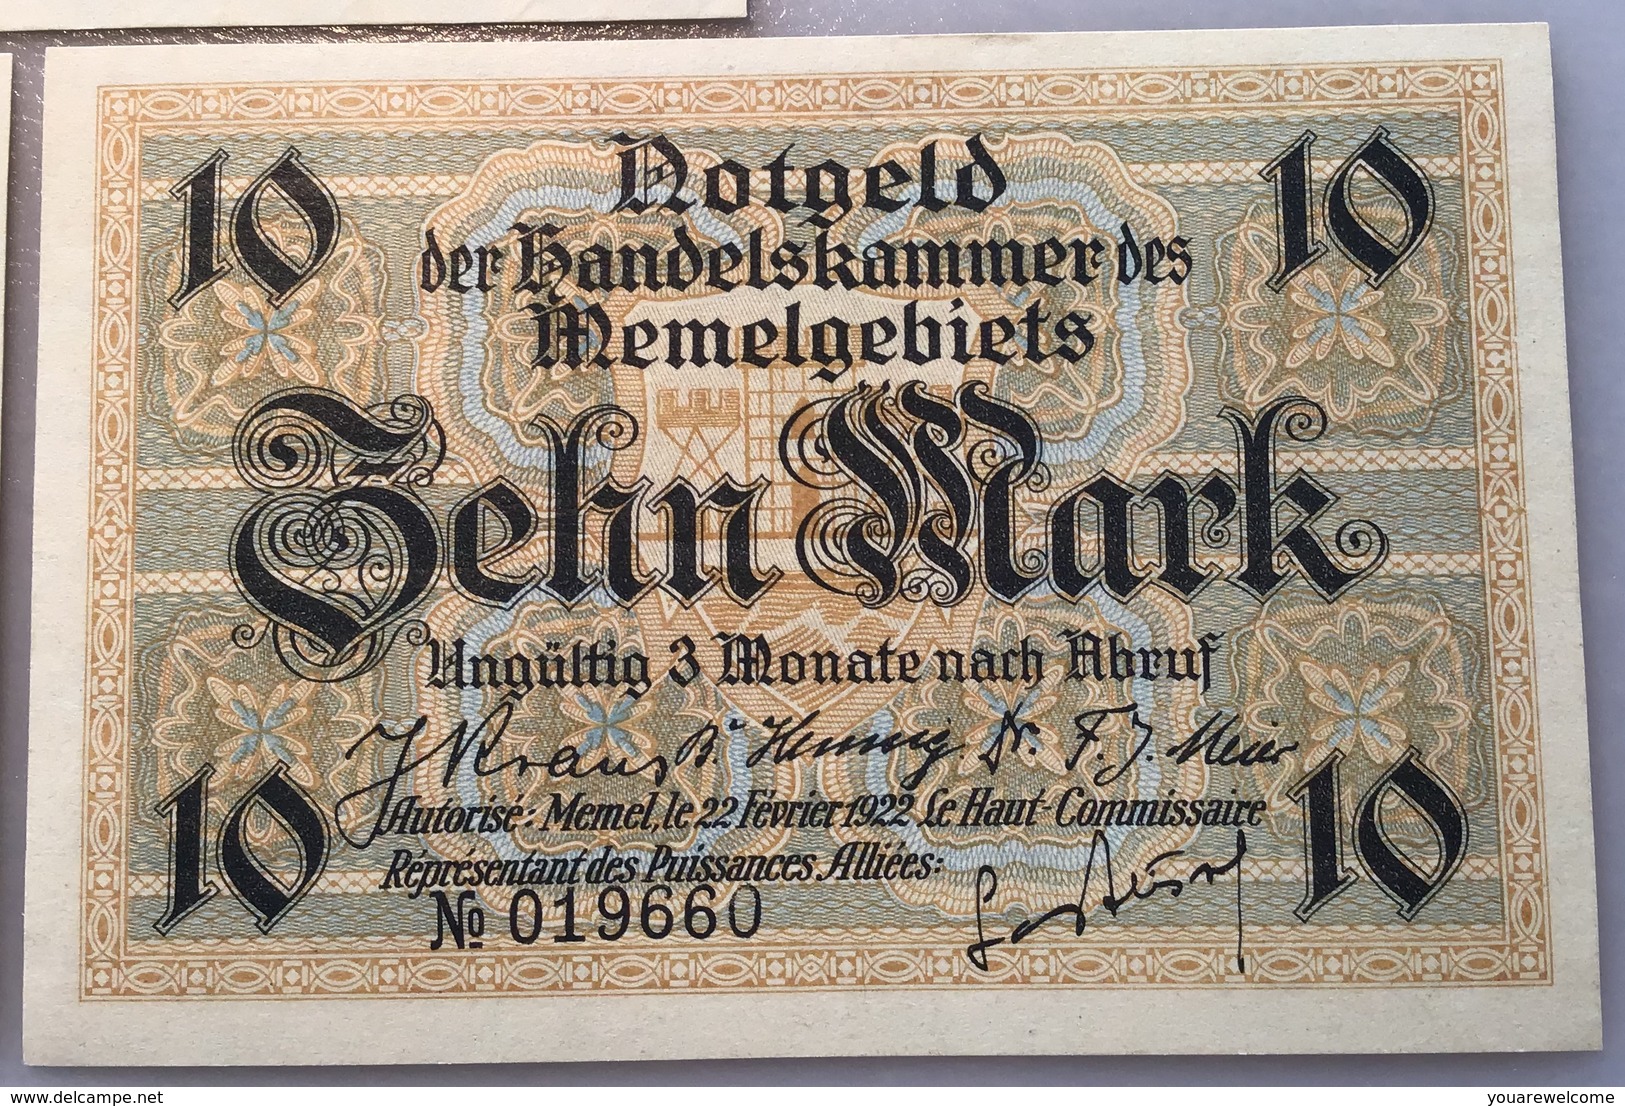 Memel 1922 Ro.846a-850a UNC, Notgeld Handelskammer Memelgebiet(Russia Geldschein Banknote Billet  France Lithuania - 1° Guerre Mondiale